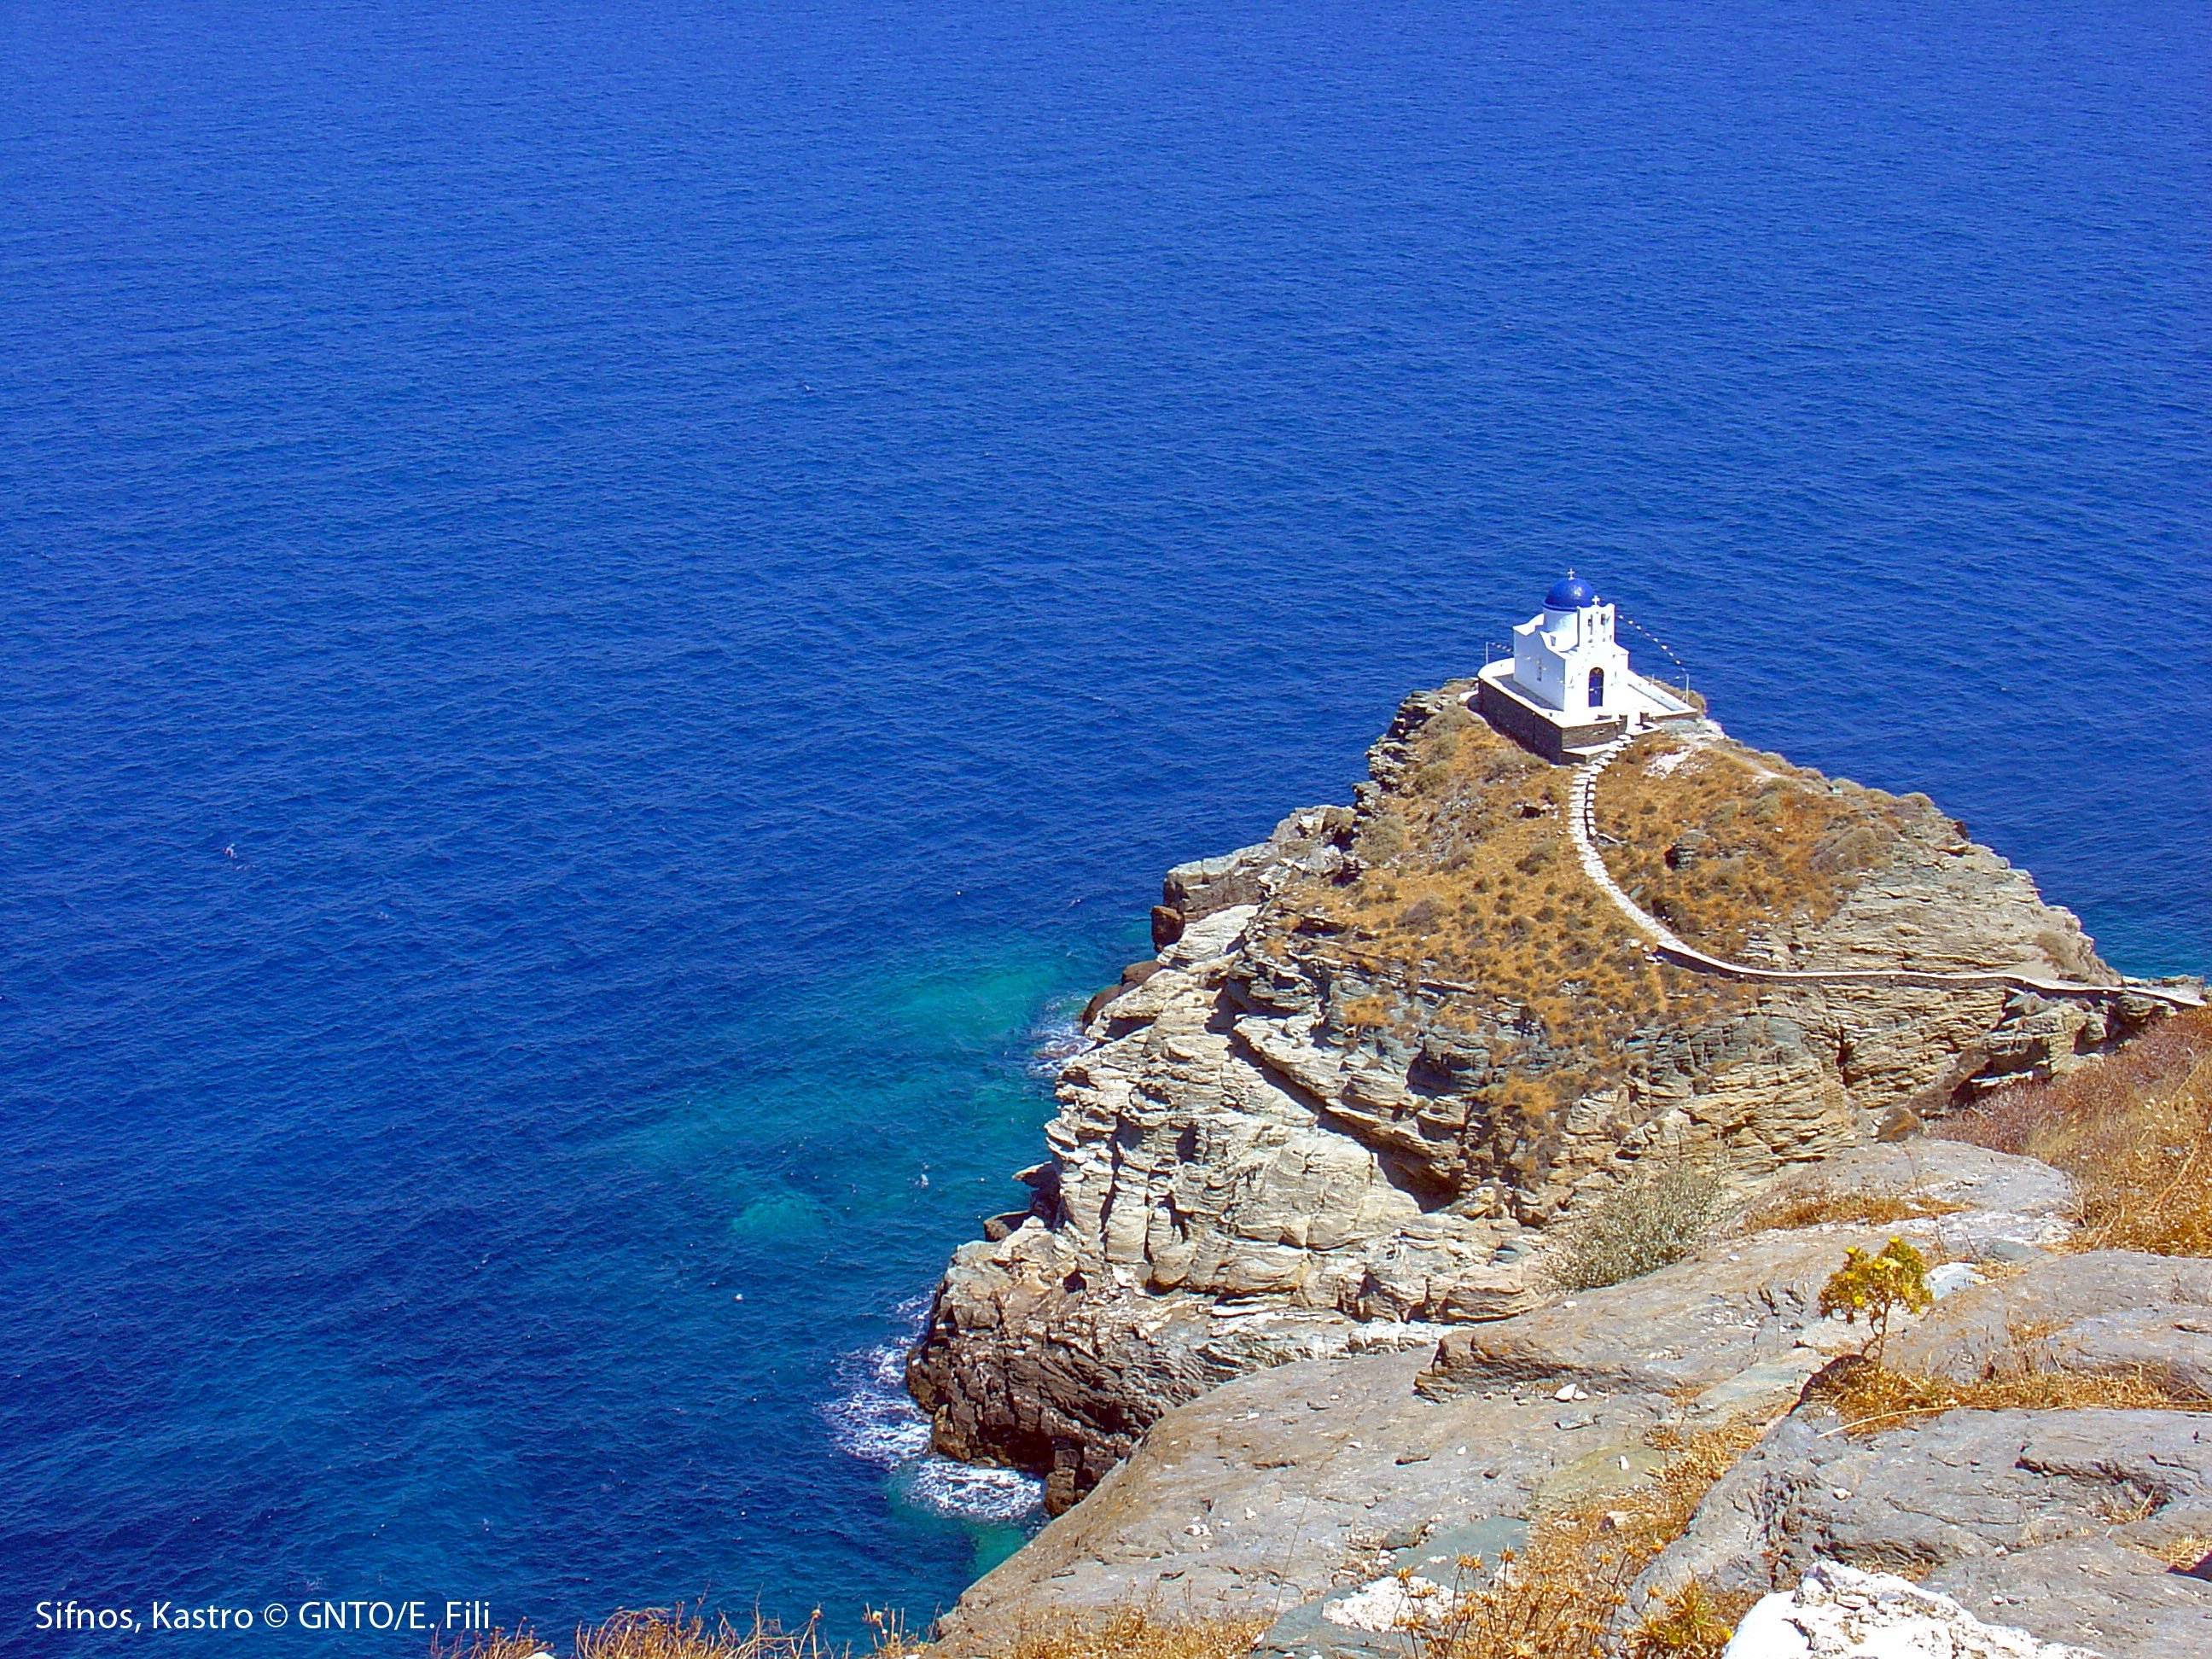 Willkommen auf Sifnos, einer fast noch unbekannten Insel